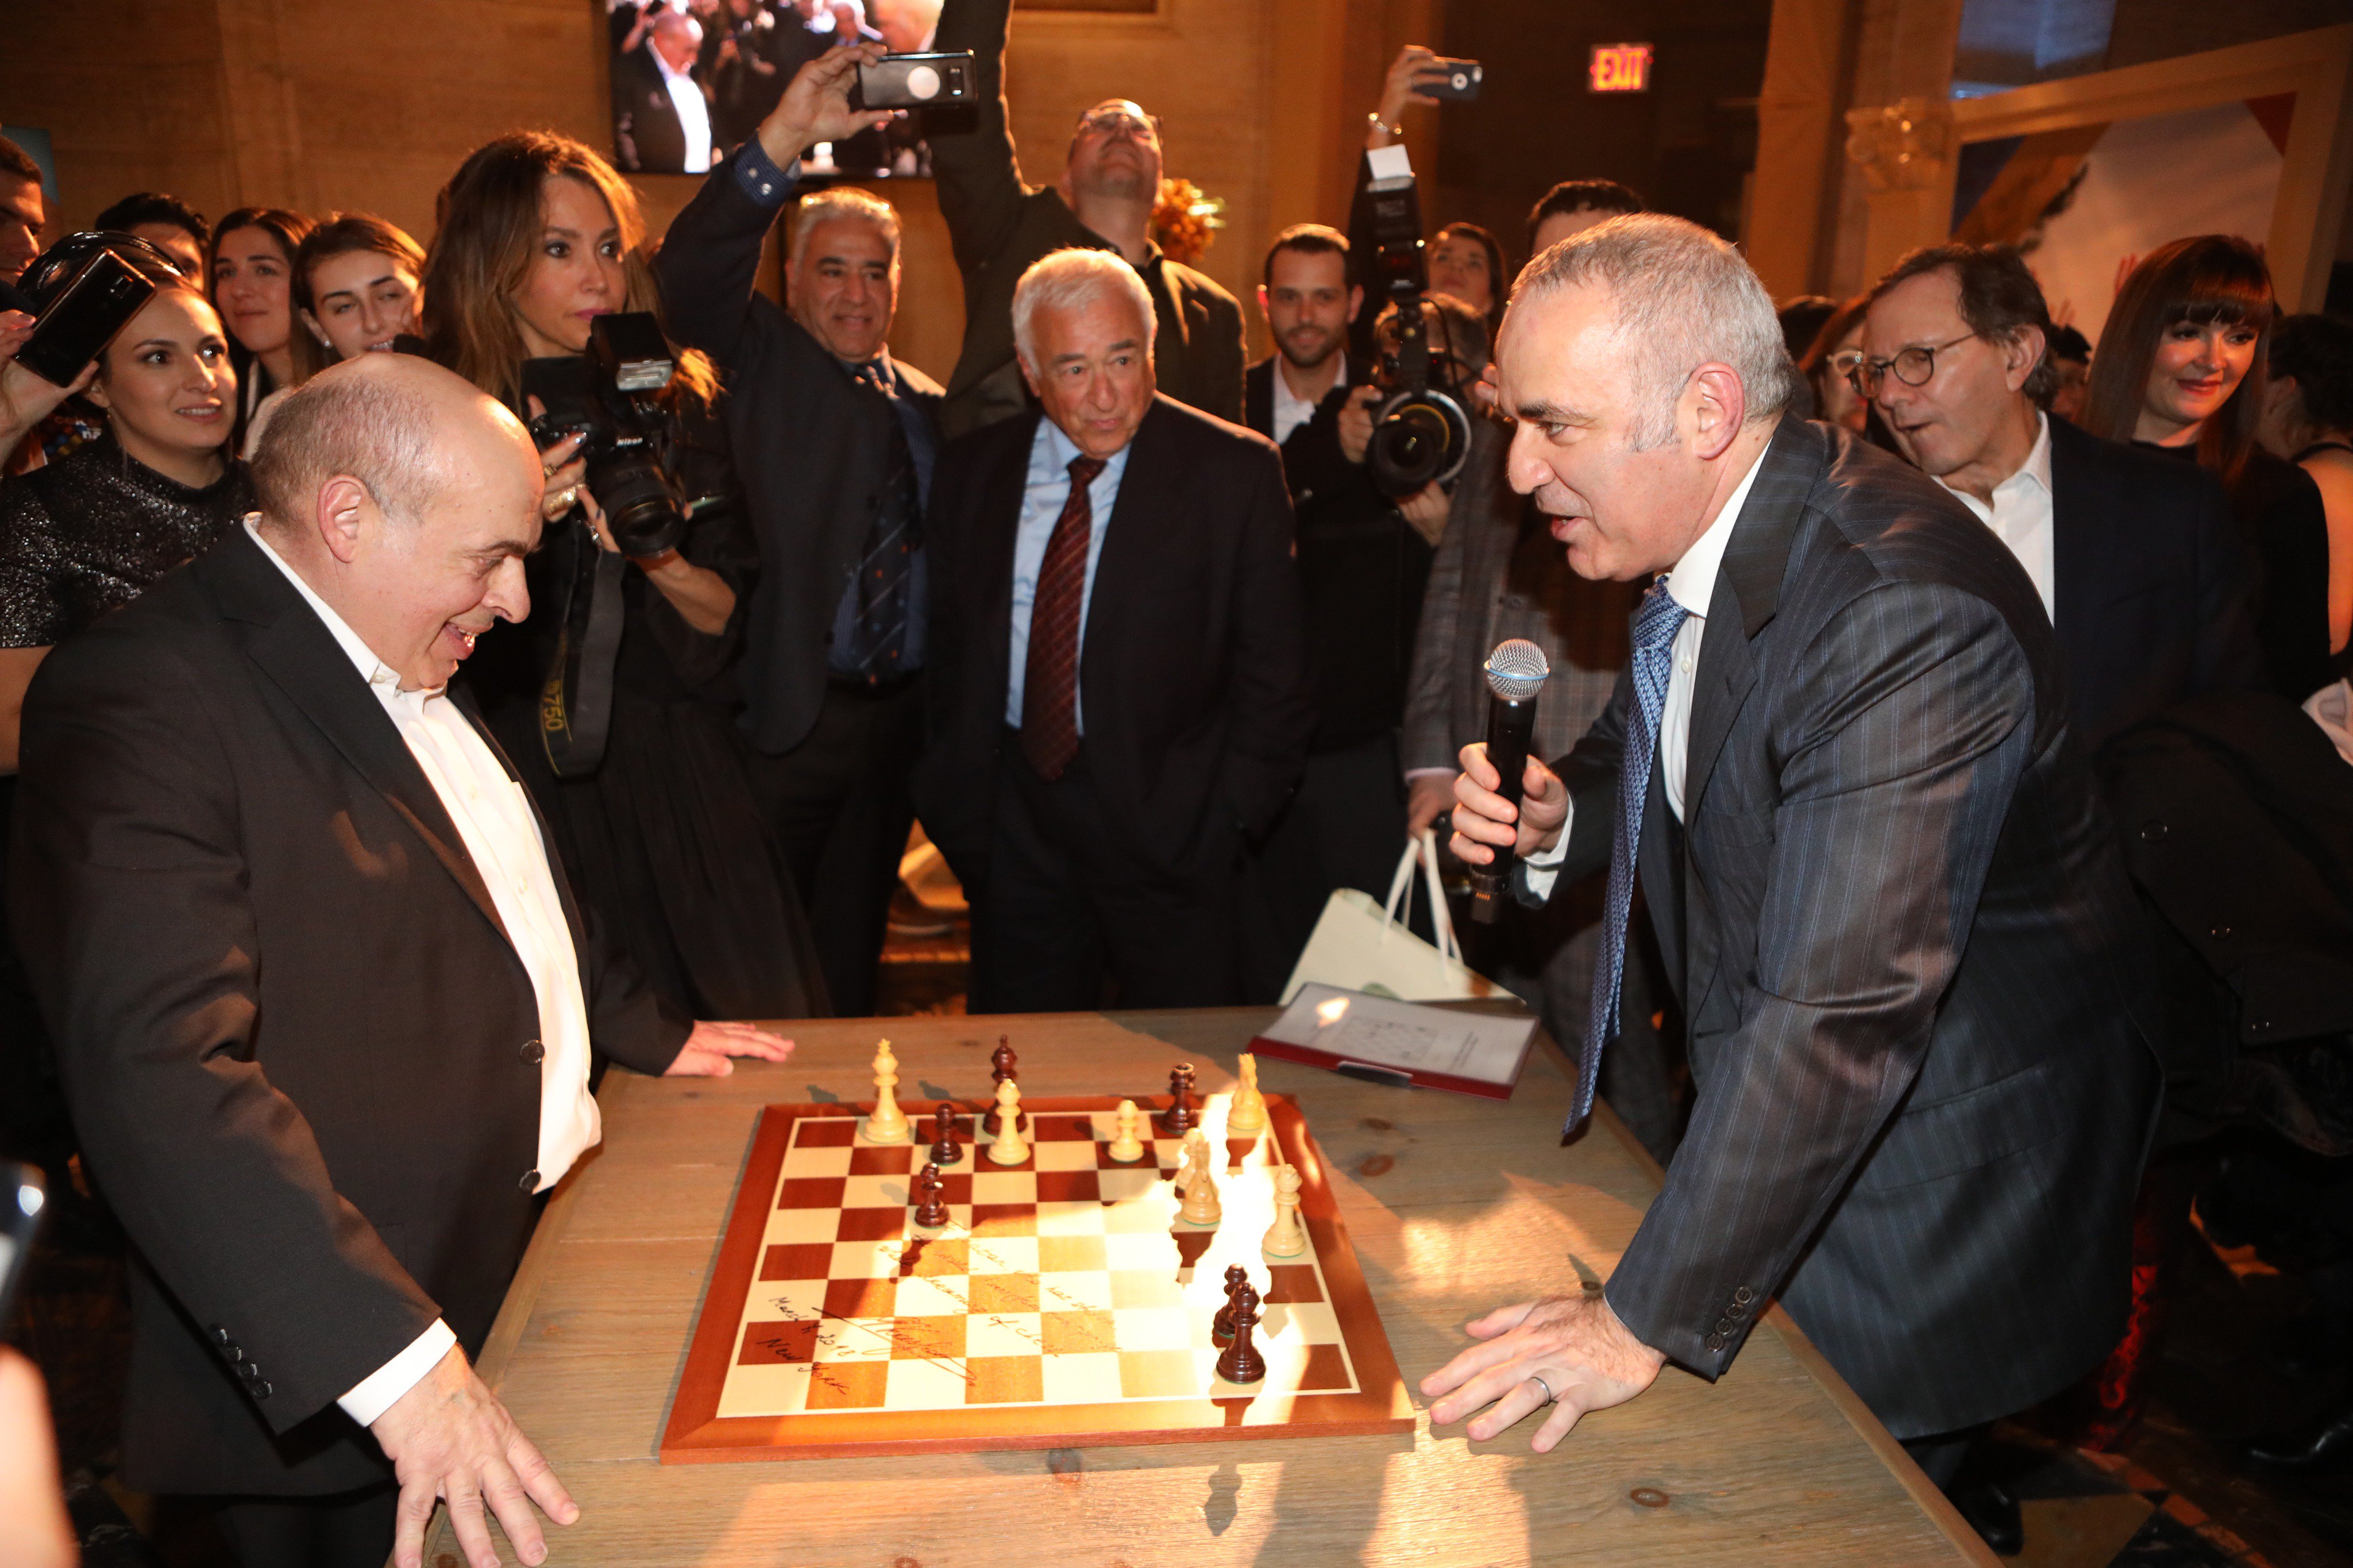 Natan Sharansky: How chess kept one man sane - BBC News